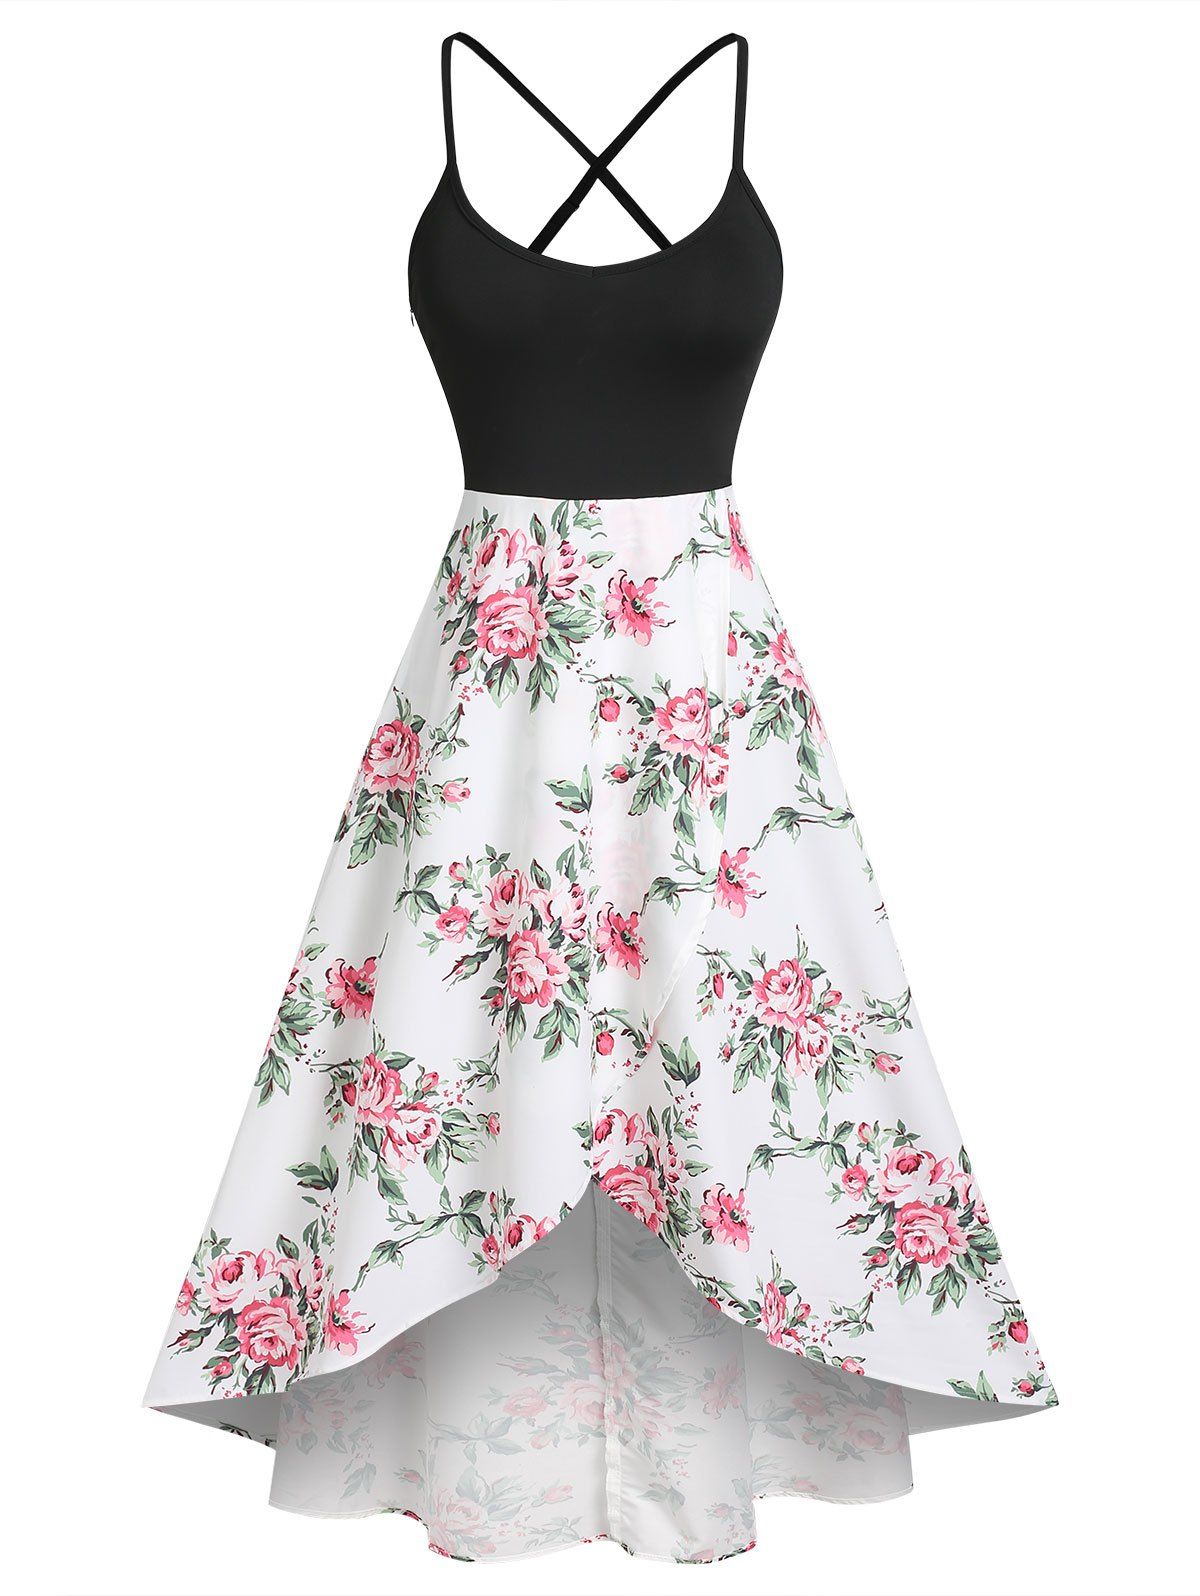 Flower Print Vacation Sundress Criss Cross Garden Party Dress Overlap High Low Cami Dress - BLACK M